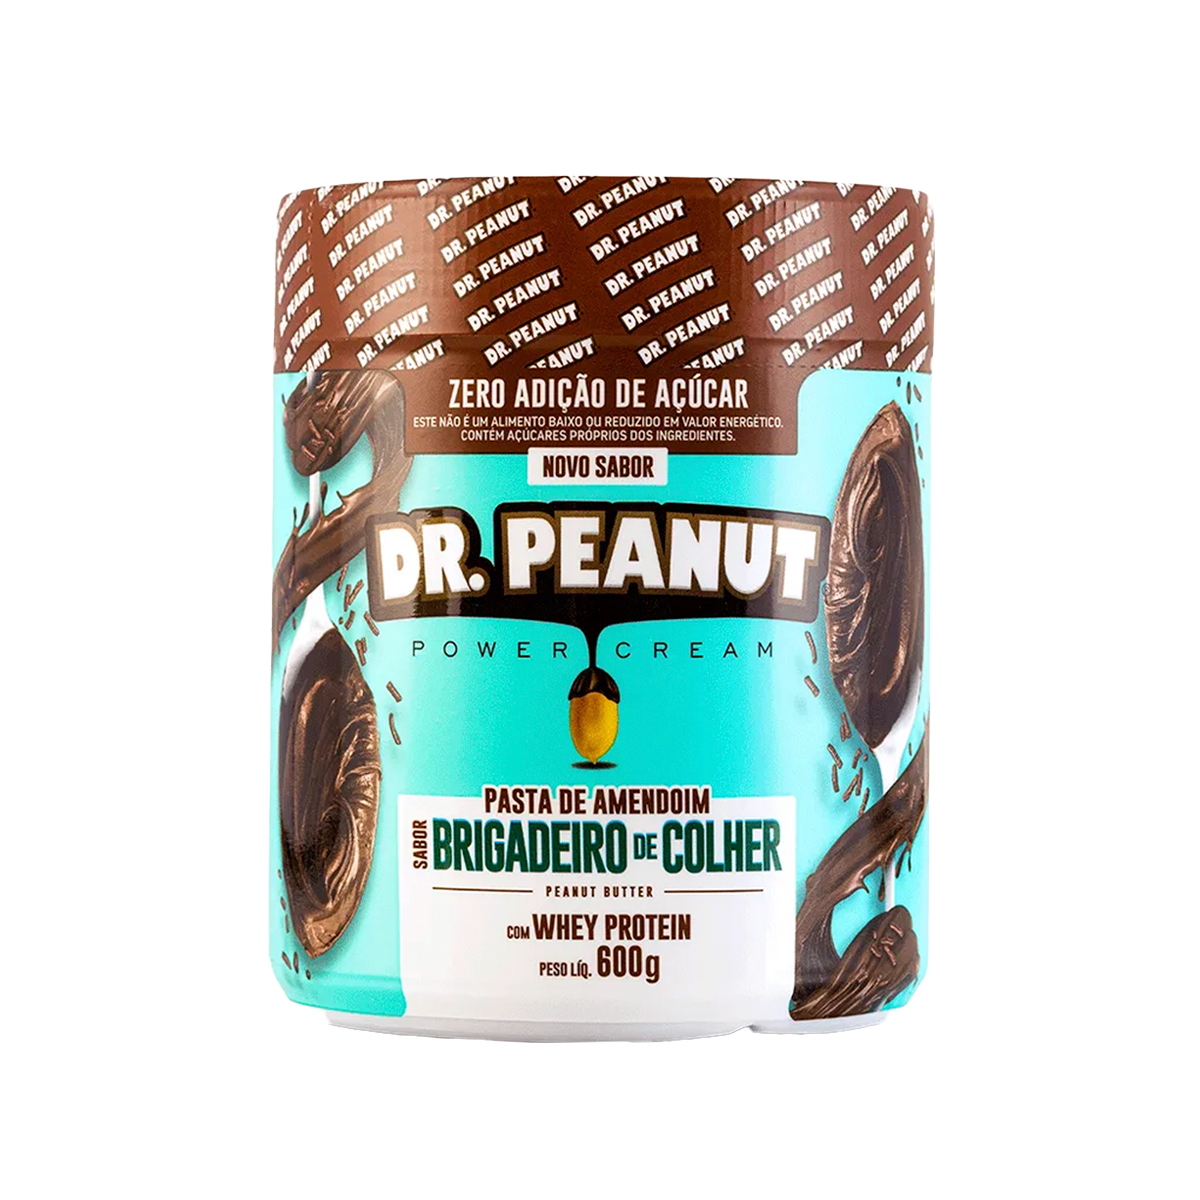 Pastas de amendoim - Dr. Peanut